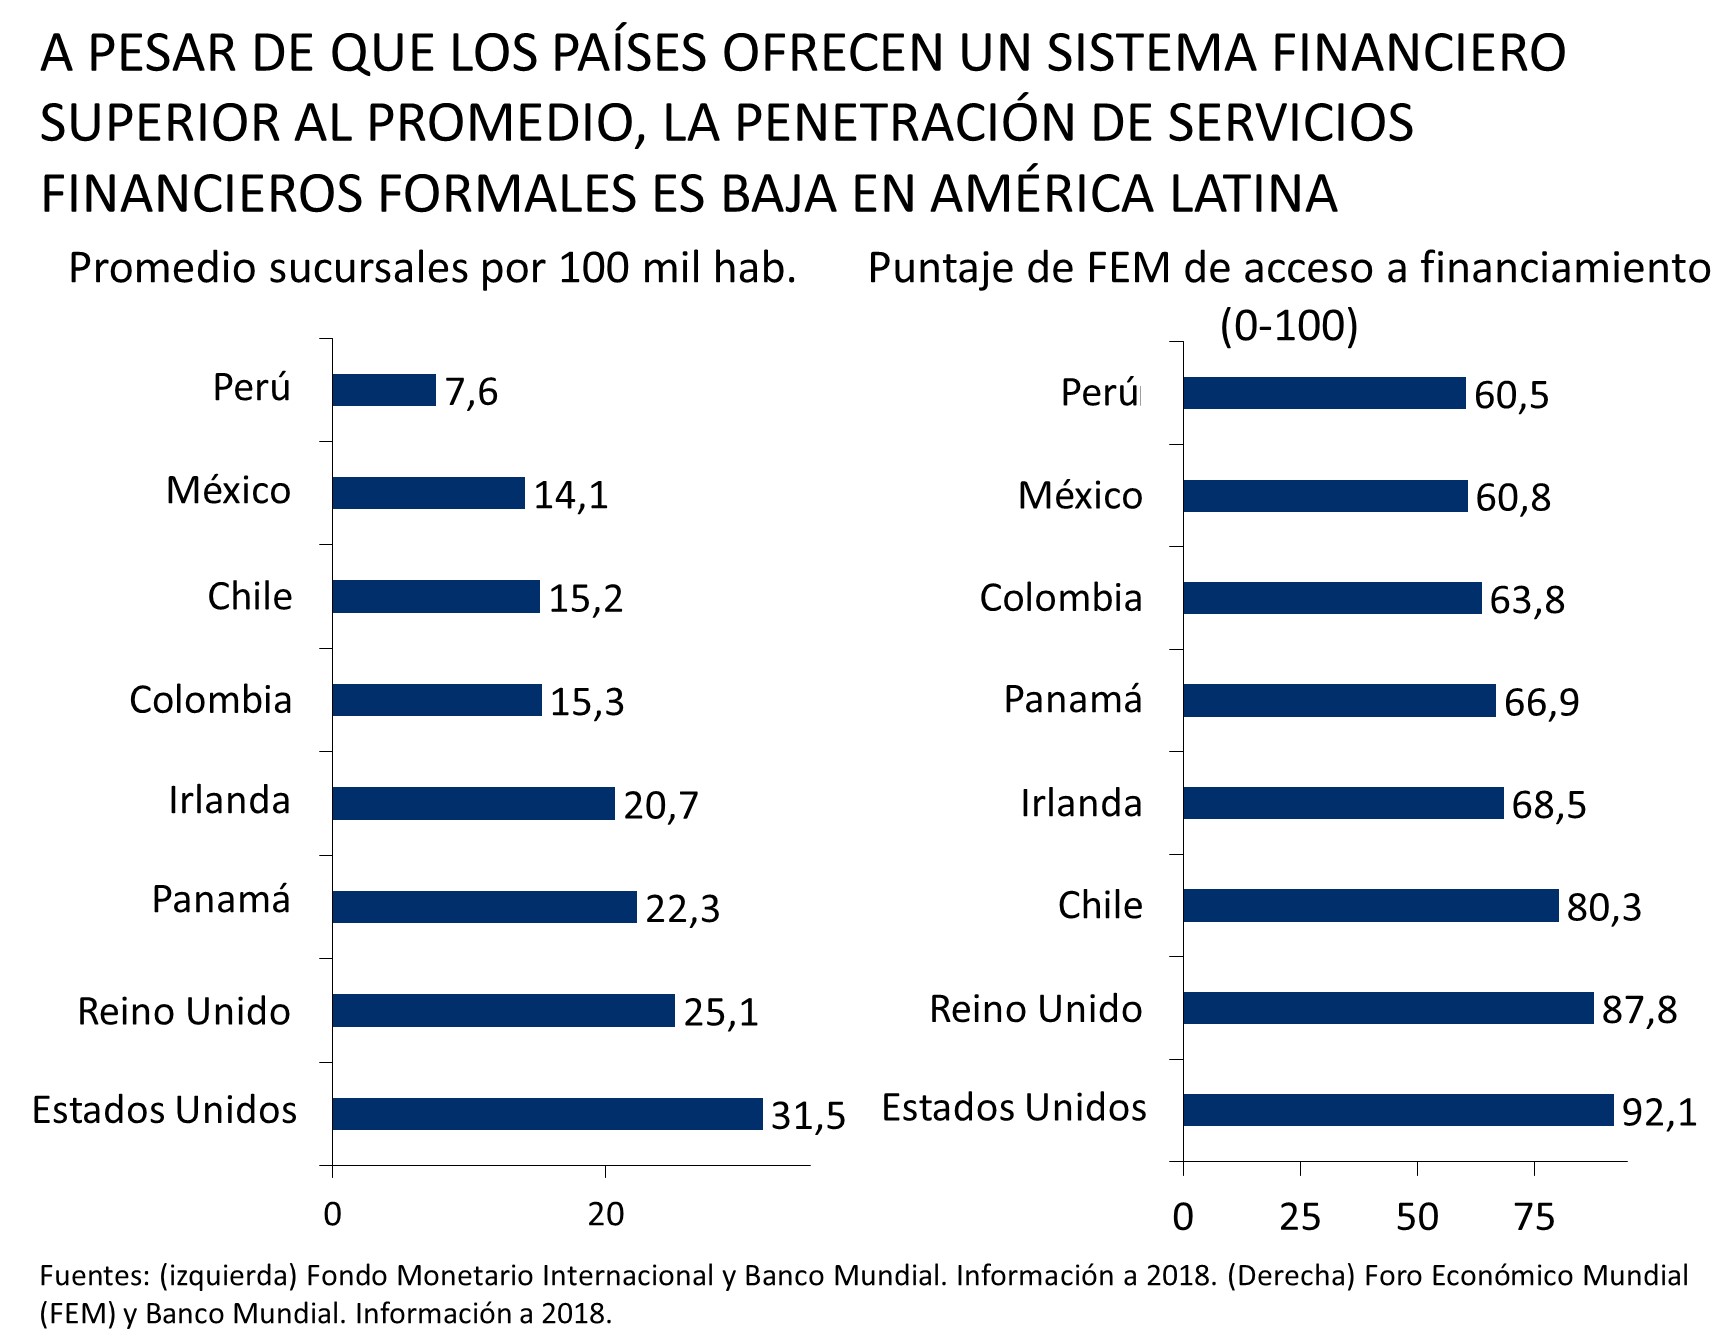 Este gráfico muestra el promedio de sucursales bancarias por cada 100 mil habitantes y el puntaje del Foro Económico Mundial (FEM) de acceso a financiamiento, desde 2018. Estados Unidos y Reino Unido lideraron ambos puntajes, mientras que Perú y México quedaron rezagados en ambos.